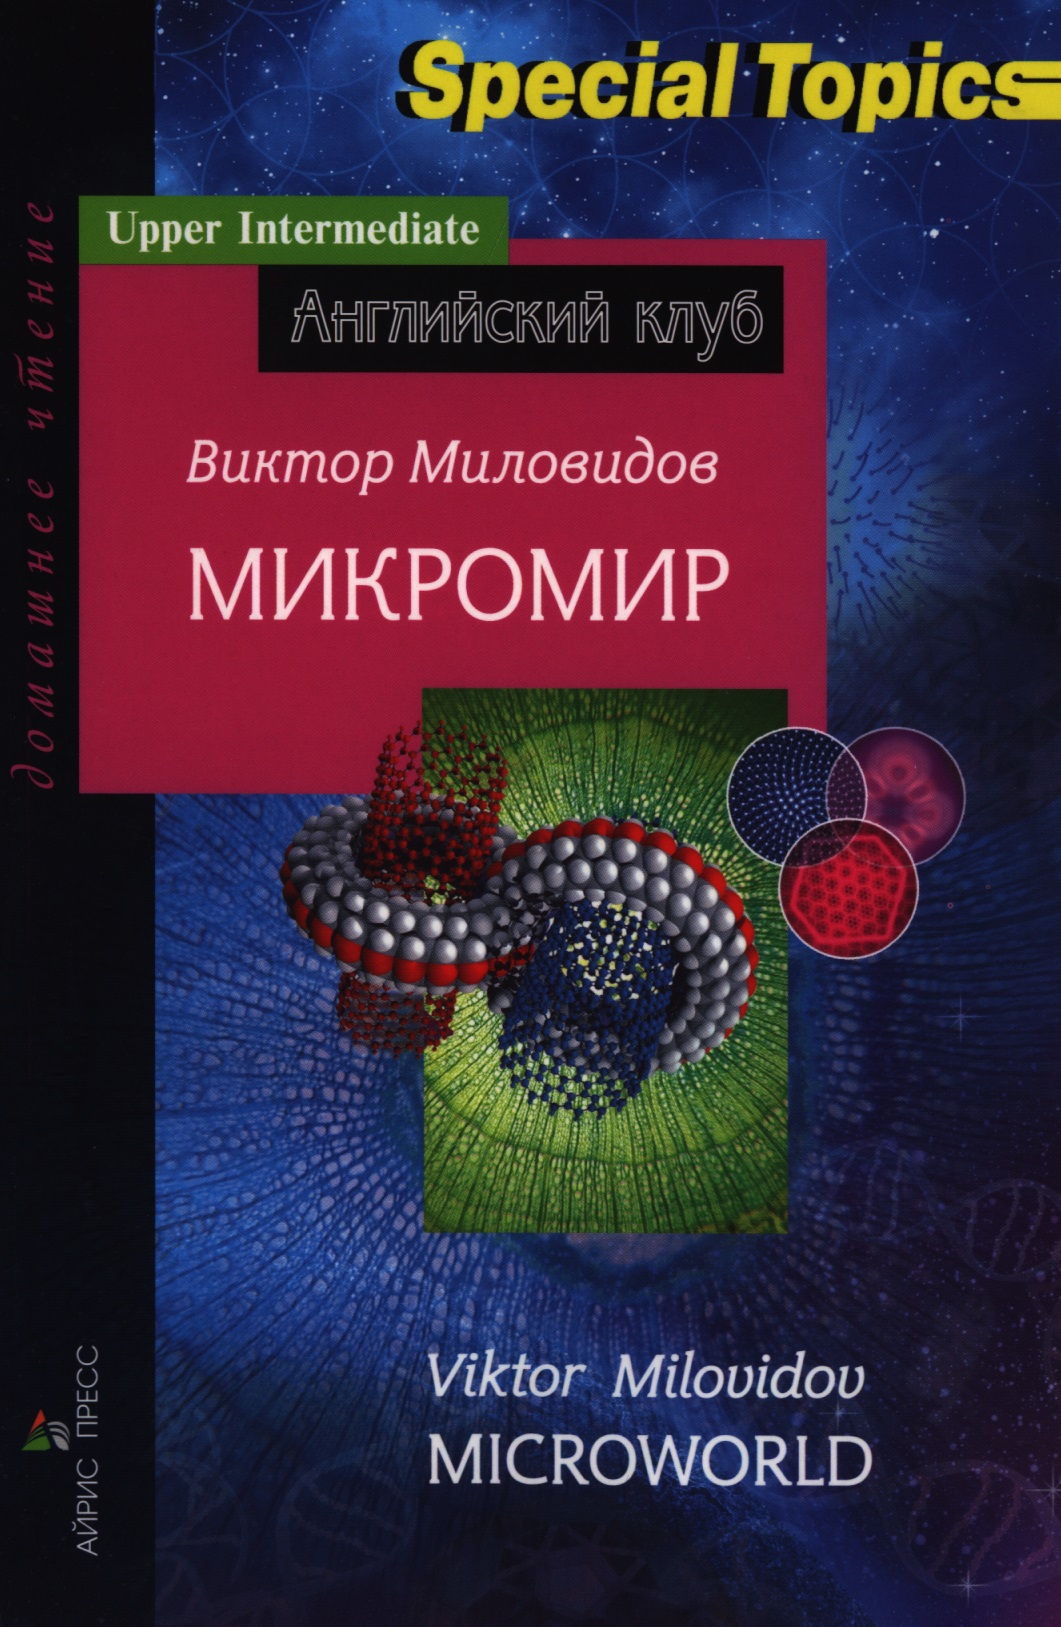 Миловидов Виктор Александрович Микромир = Microworld миловидов виктор александрович английская грамматика для начинающих